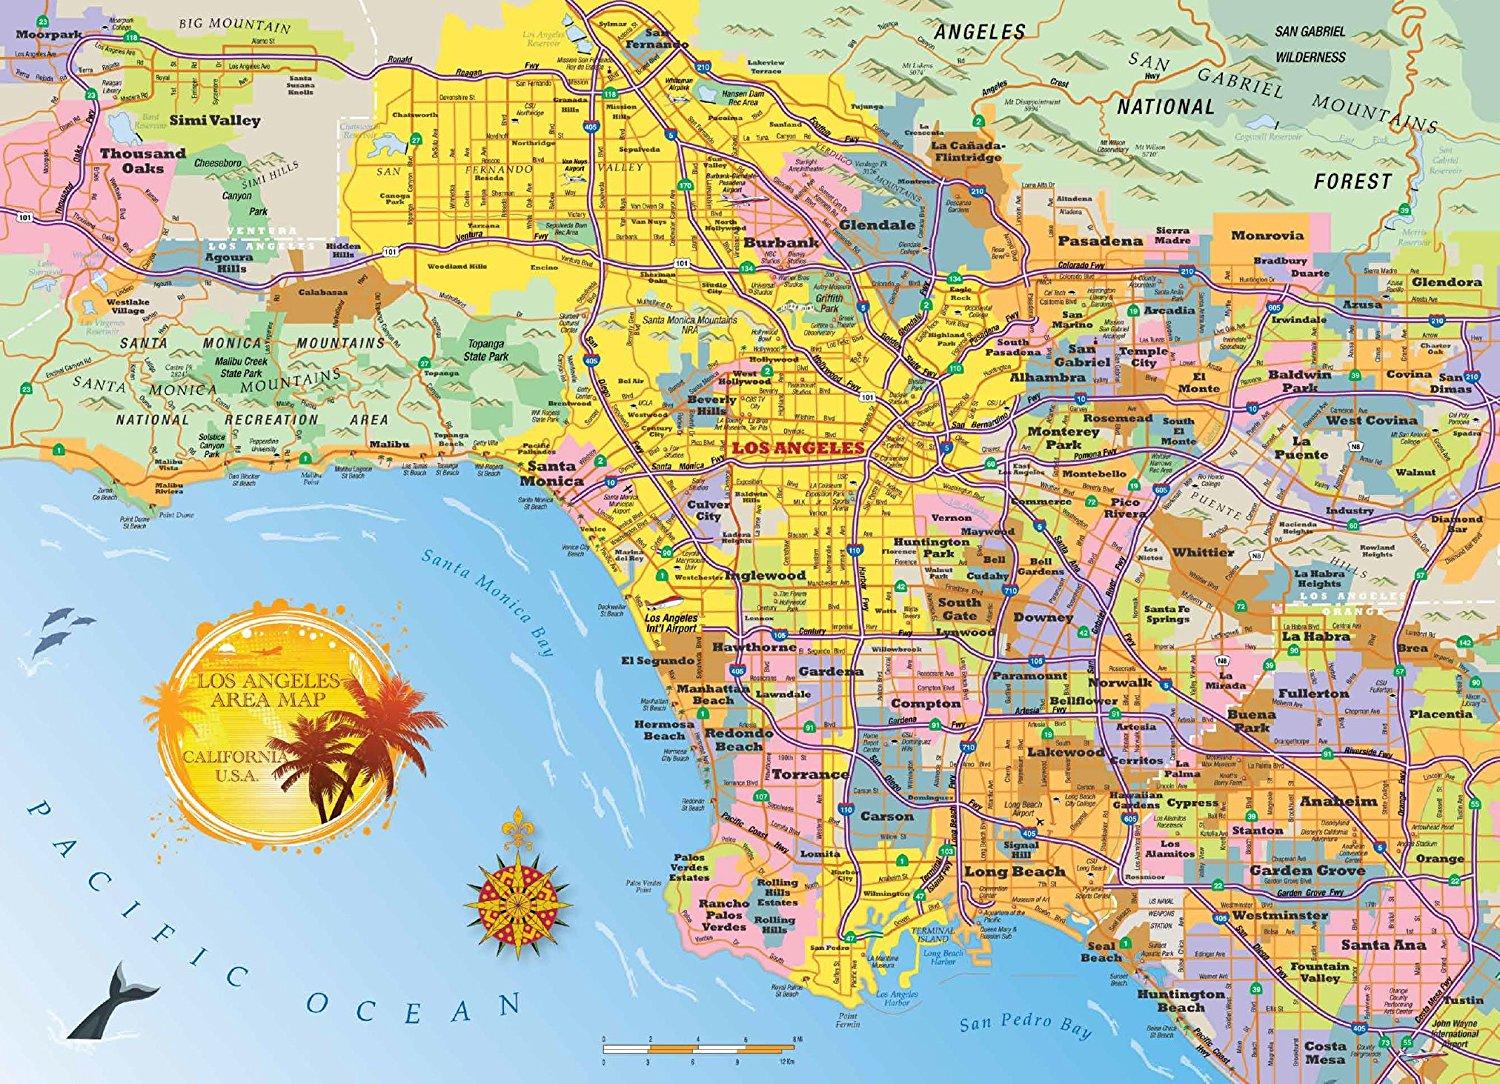 Los Angeles metropolitan area map - Map of Los Angeles metropolitan ...